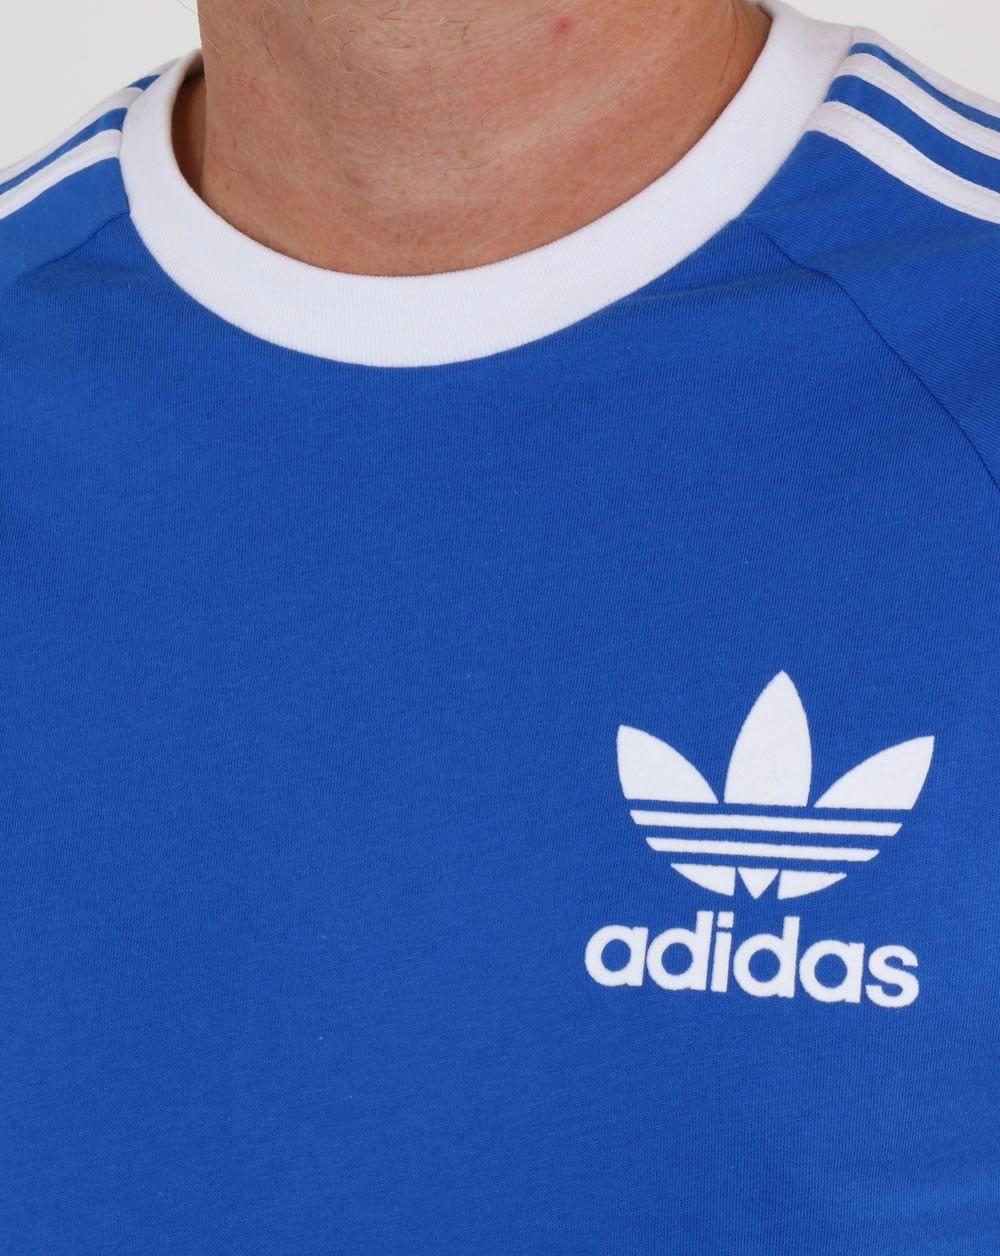 Blue and White Adidas Logo - Adidas T Shirt, blue, California, 3 stripes,originals,mens, tee, royal